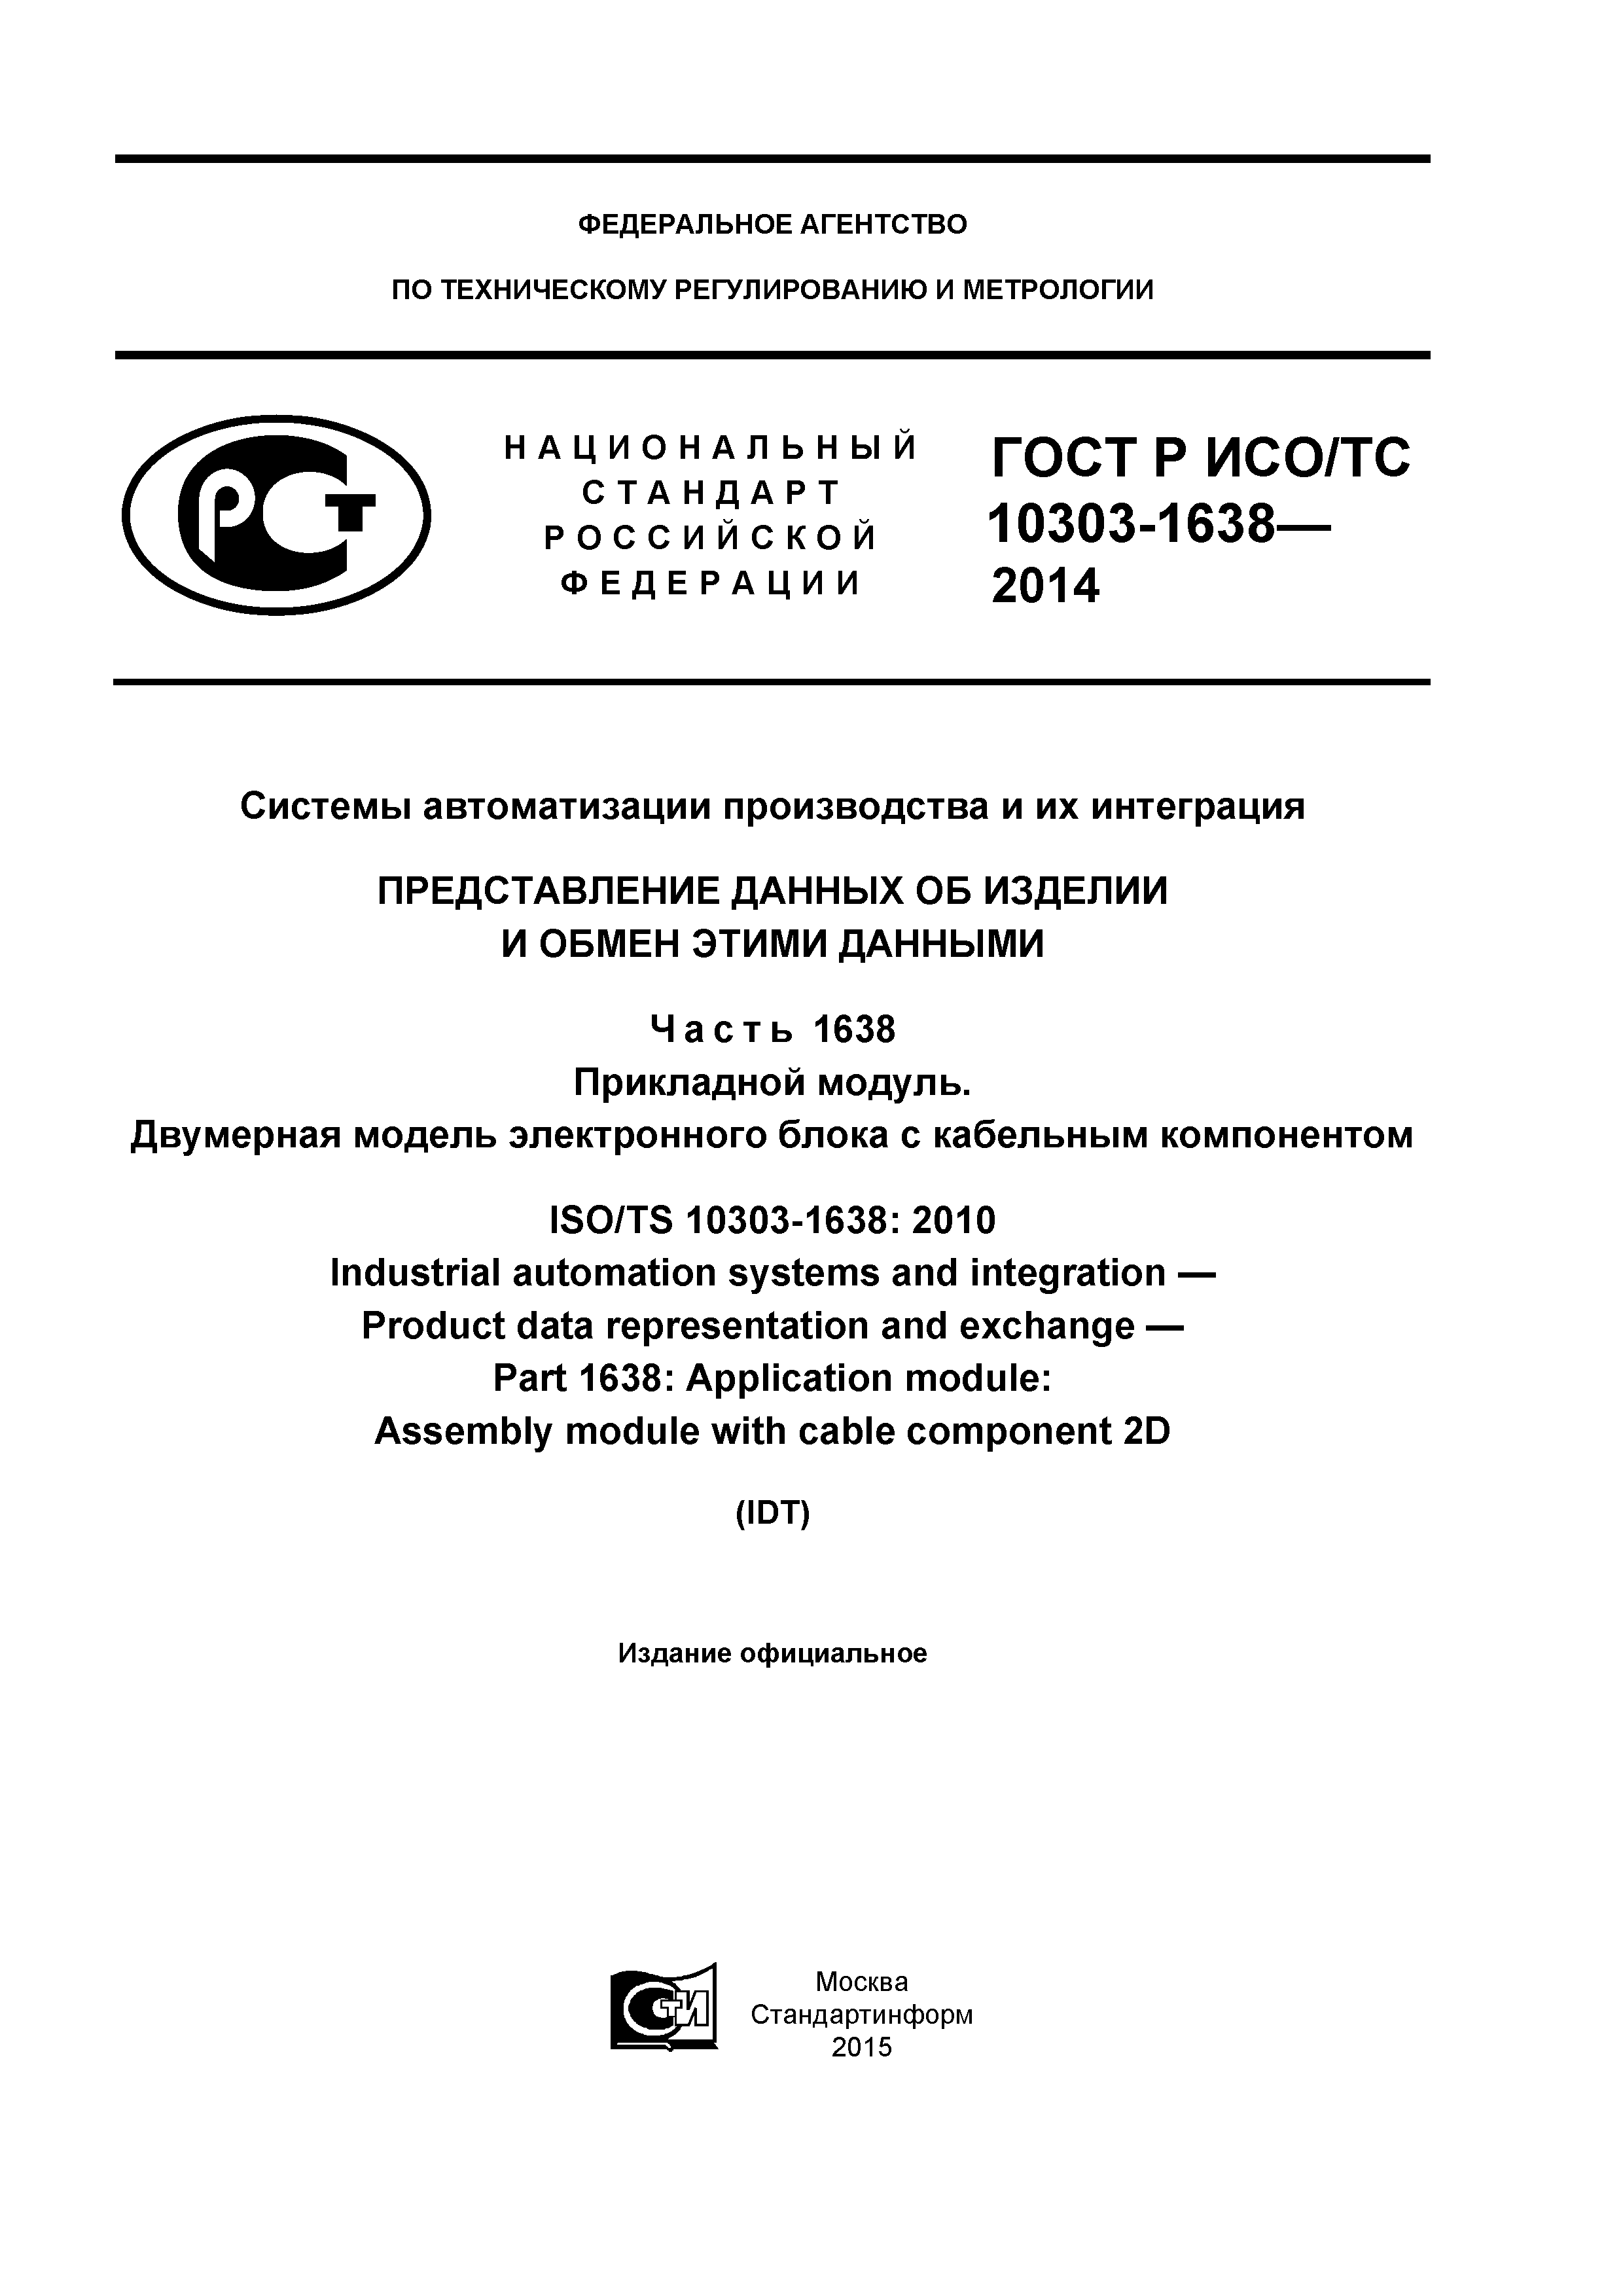 ГОСТ Р ИСО/ТС 10303-1638-2014